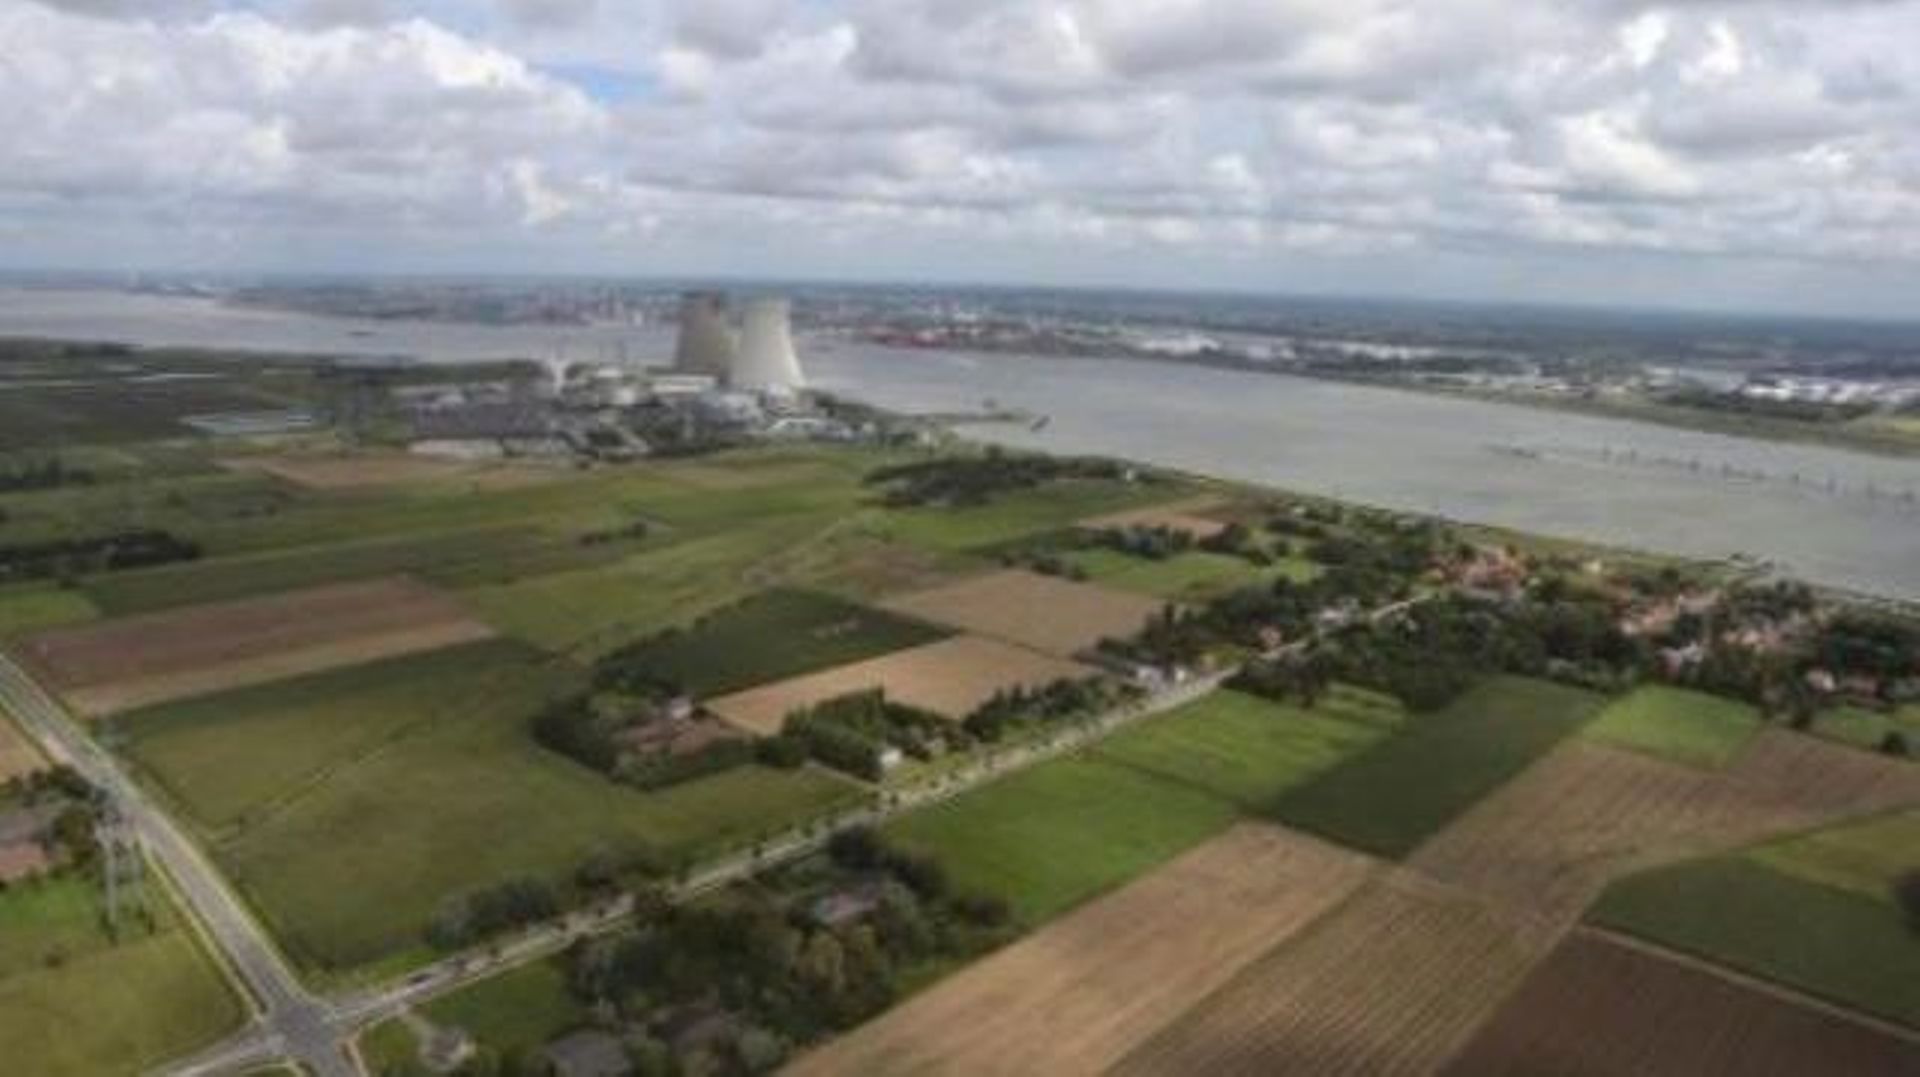 Un prévenu au procès Sharia4Belgium a travaillé 3 ans à la centrale nucléaire de Doel